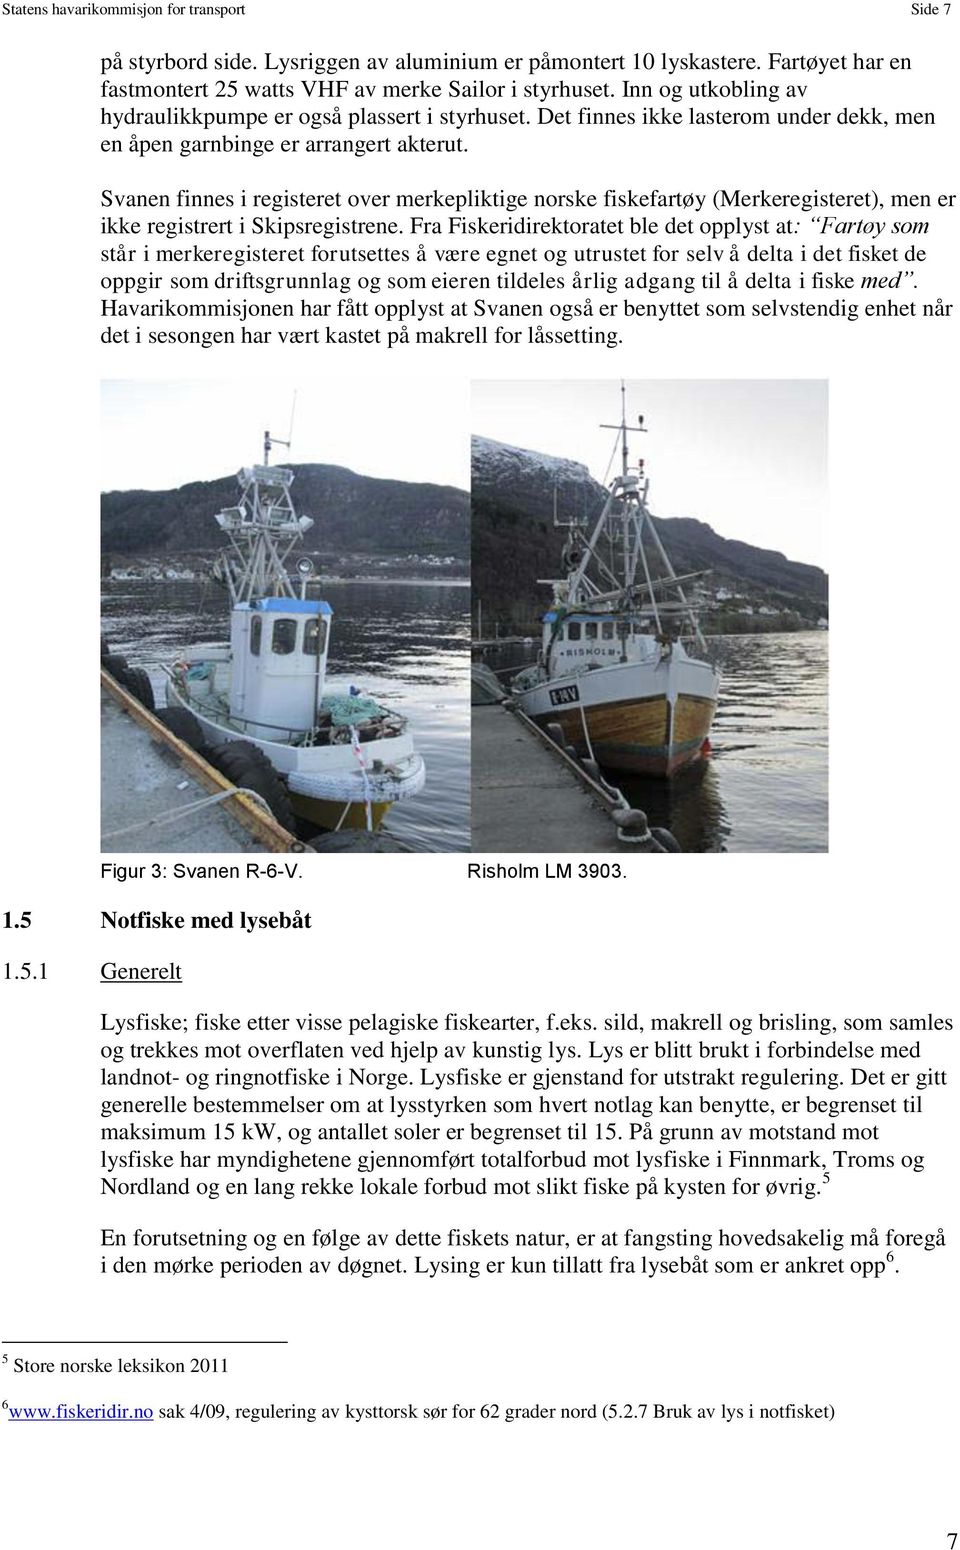 Svanen finnes i registeret over merkepliktige norske fiskefartøy (Merkeregisteret), men er ikke registrert i Skipsregistrene.